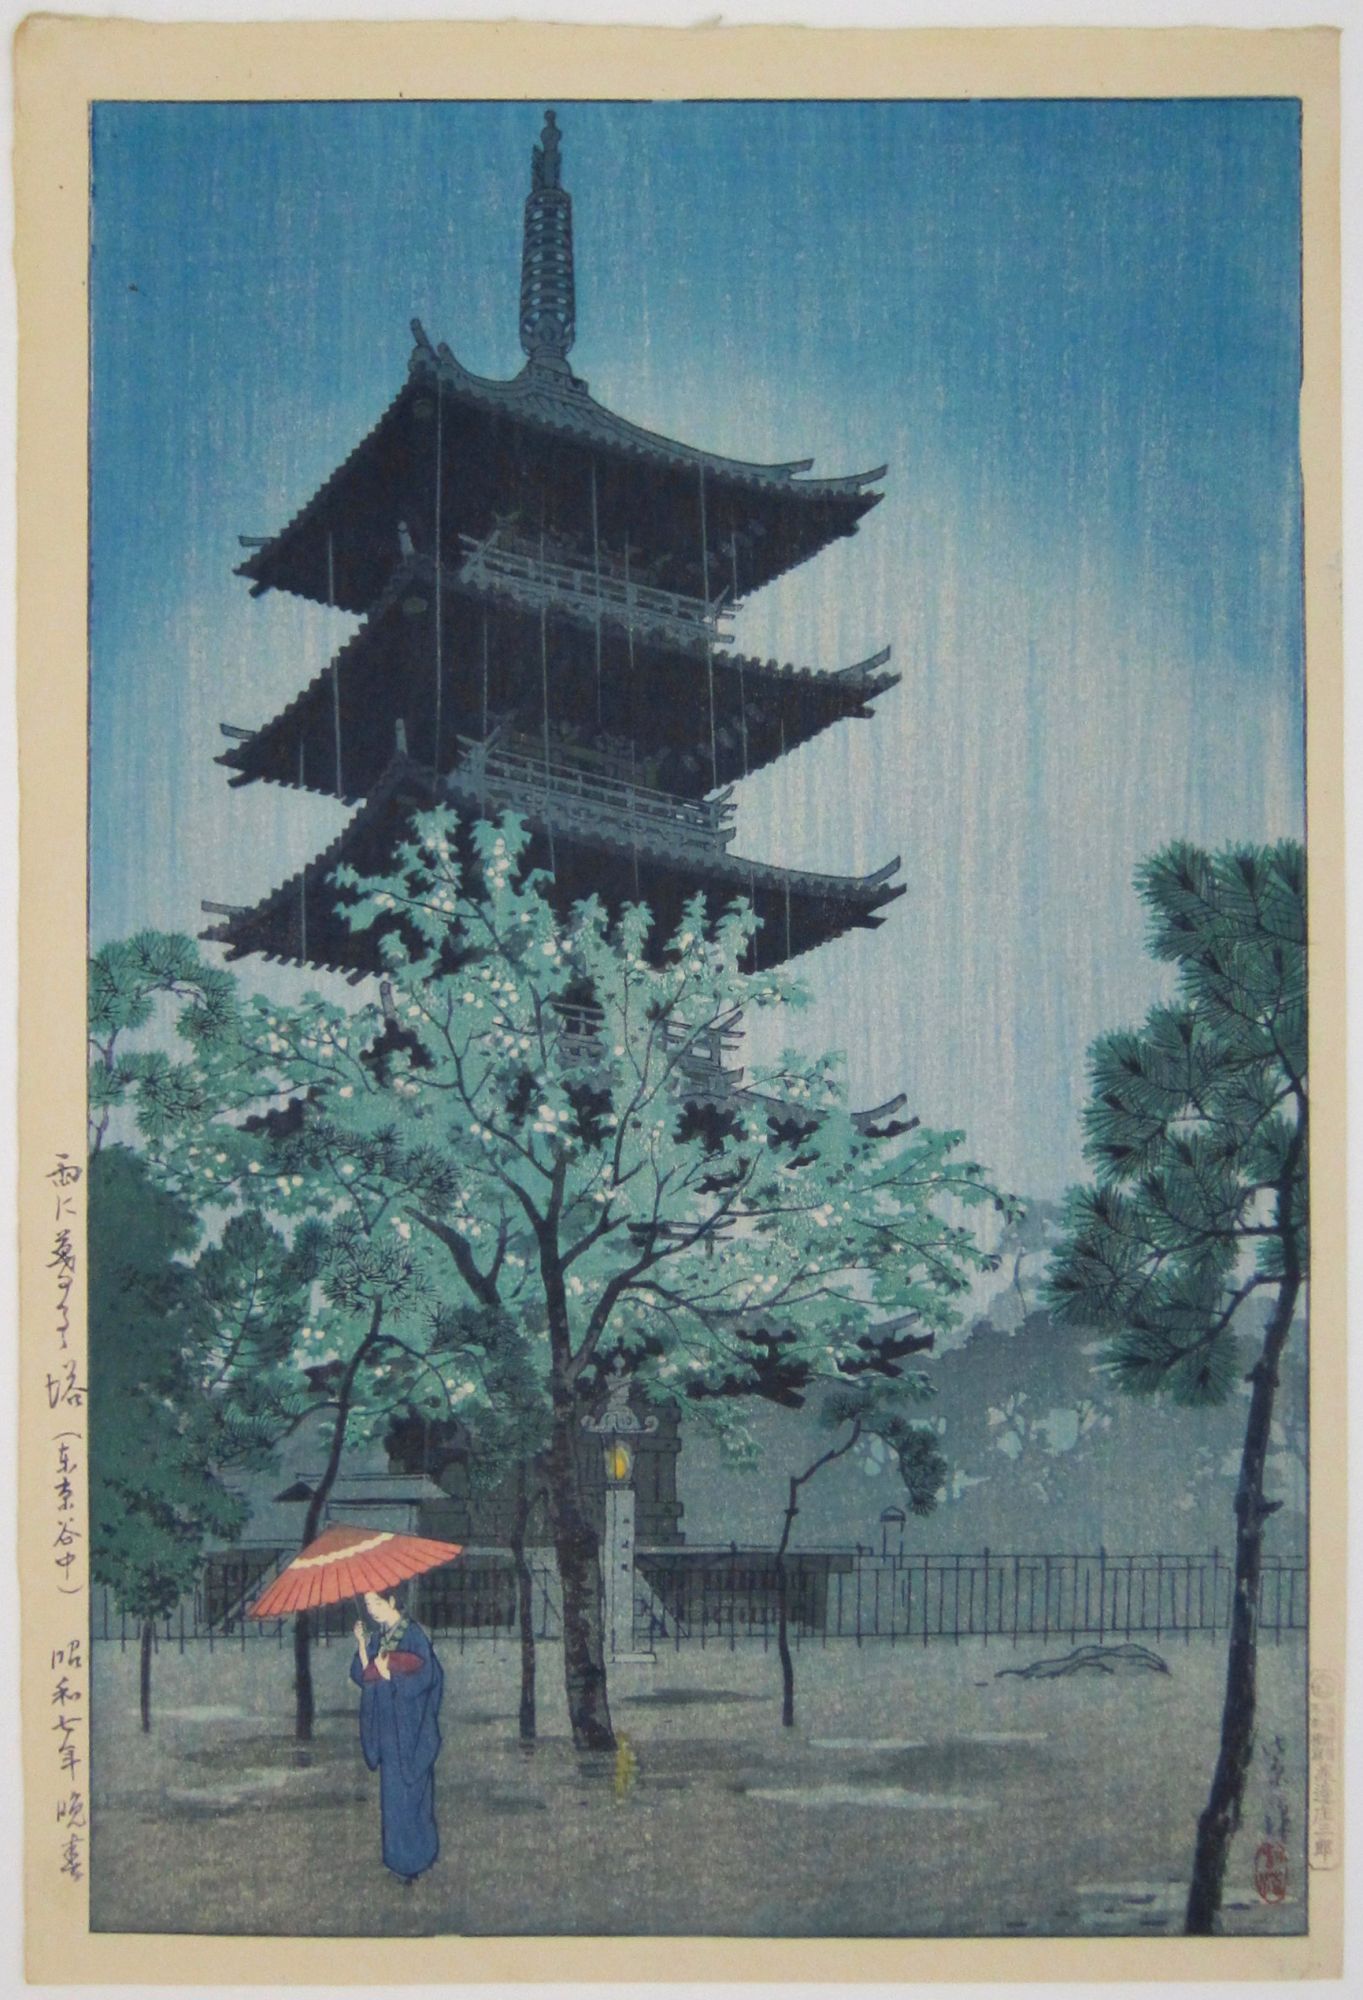 Pagoda in Rain at Nightfall, Yanaka, Tokyo.